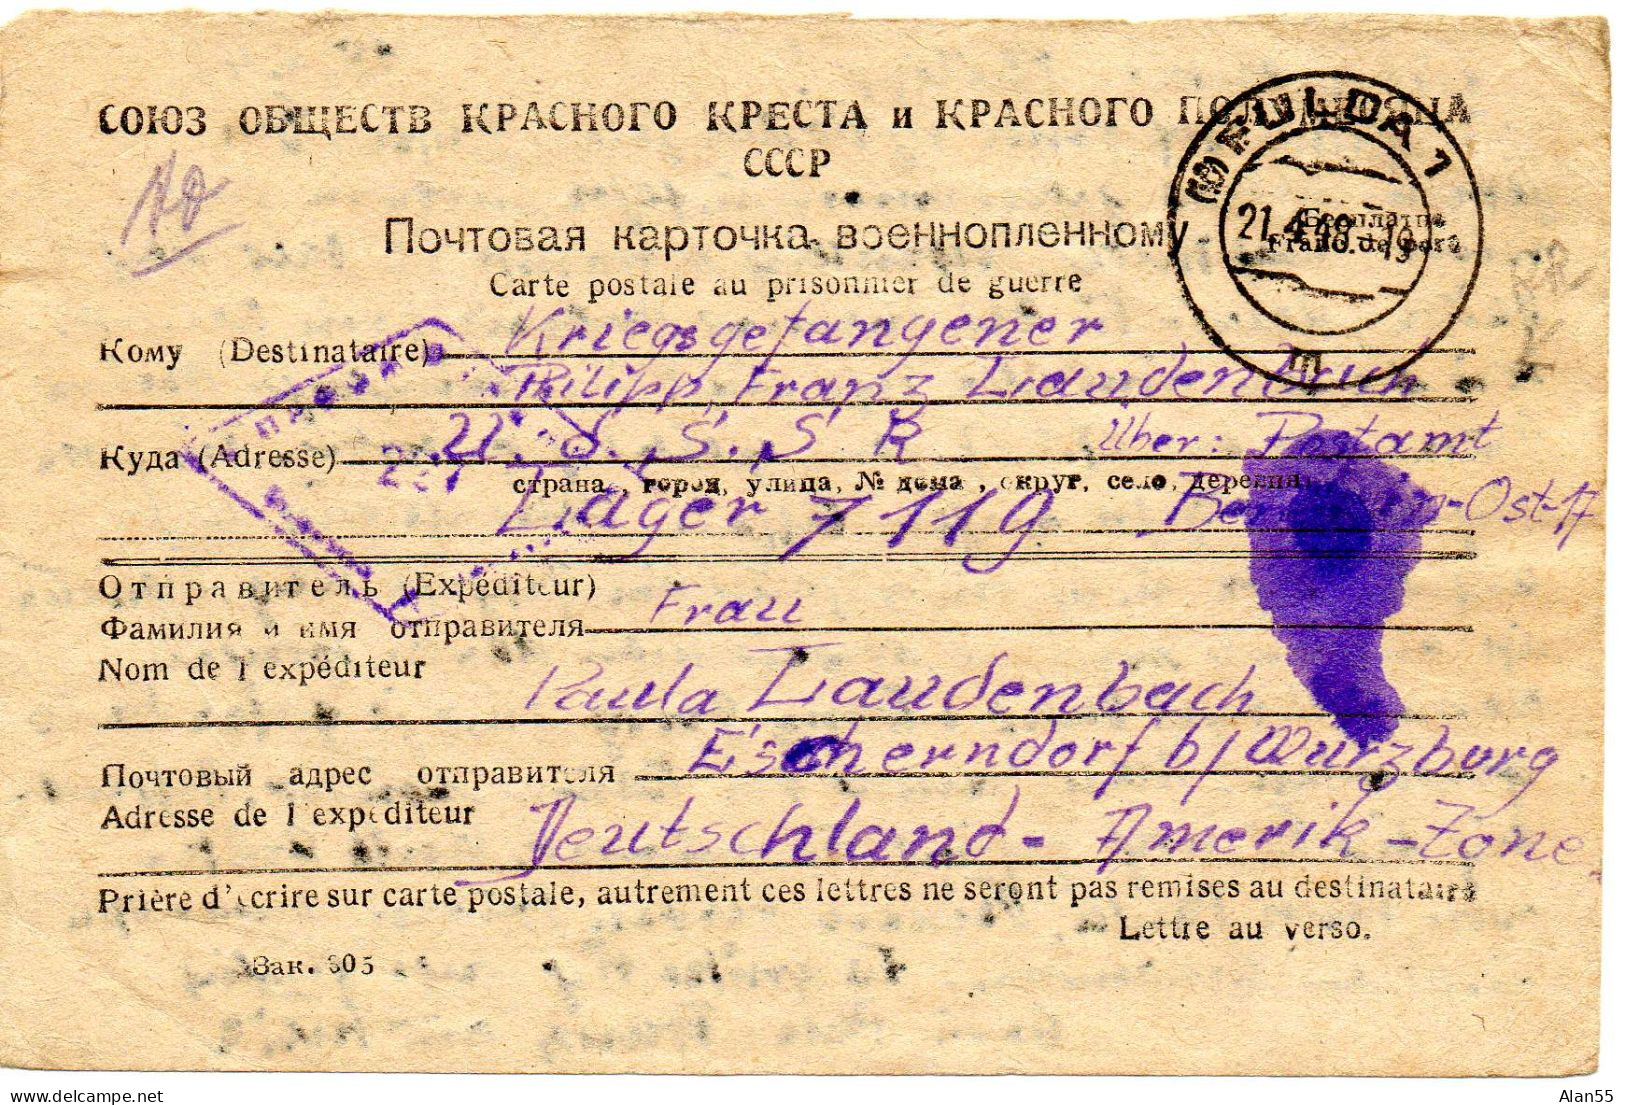 URSS. 1948. CARTE FAMILIALE CROIX-ROUGE. (SENS ALLEMAGNE-URSS). CENSURE - Lettres & Documents